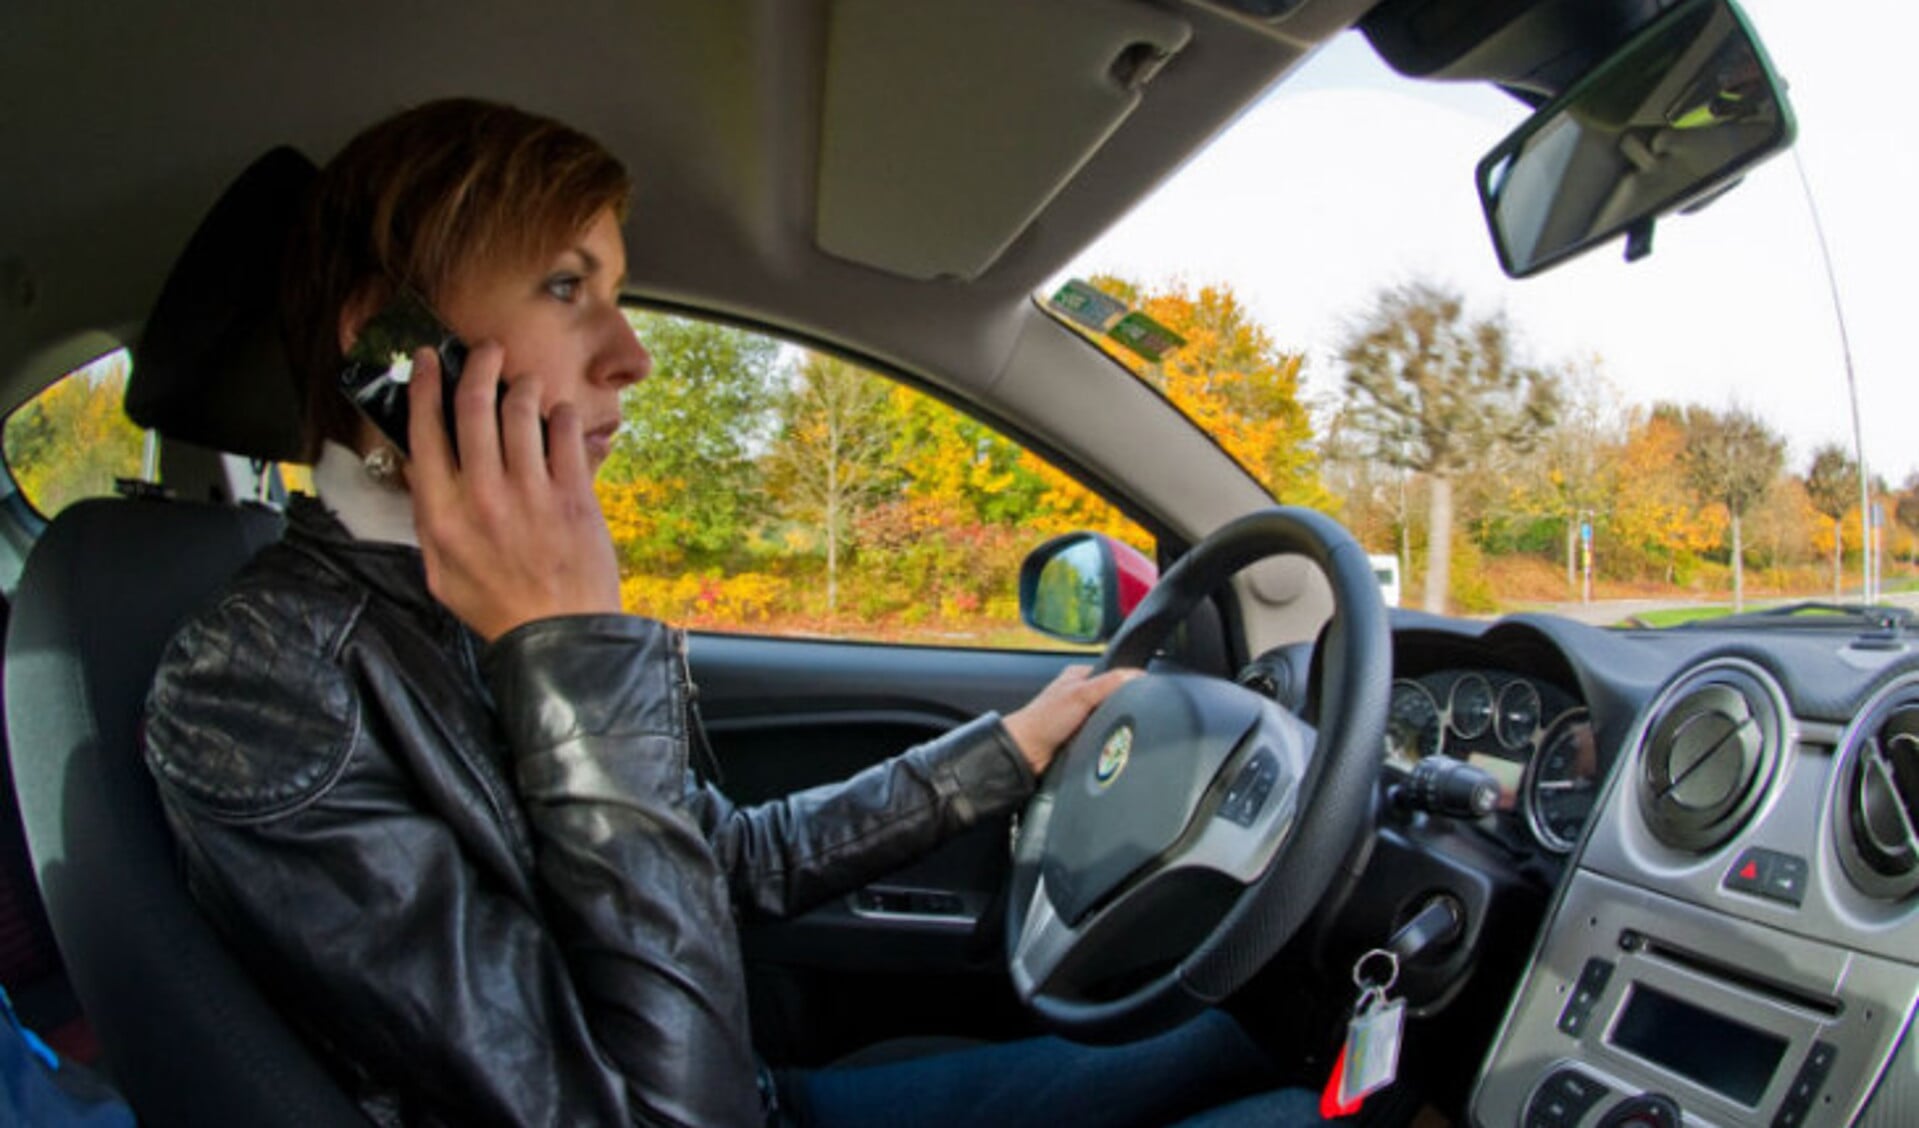 Is je smatphone gebruiken tijdens autorijden roekeloos? Veilig Verkeer Nederland (VVN) vindt dit zeker. 